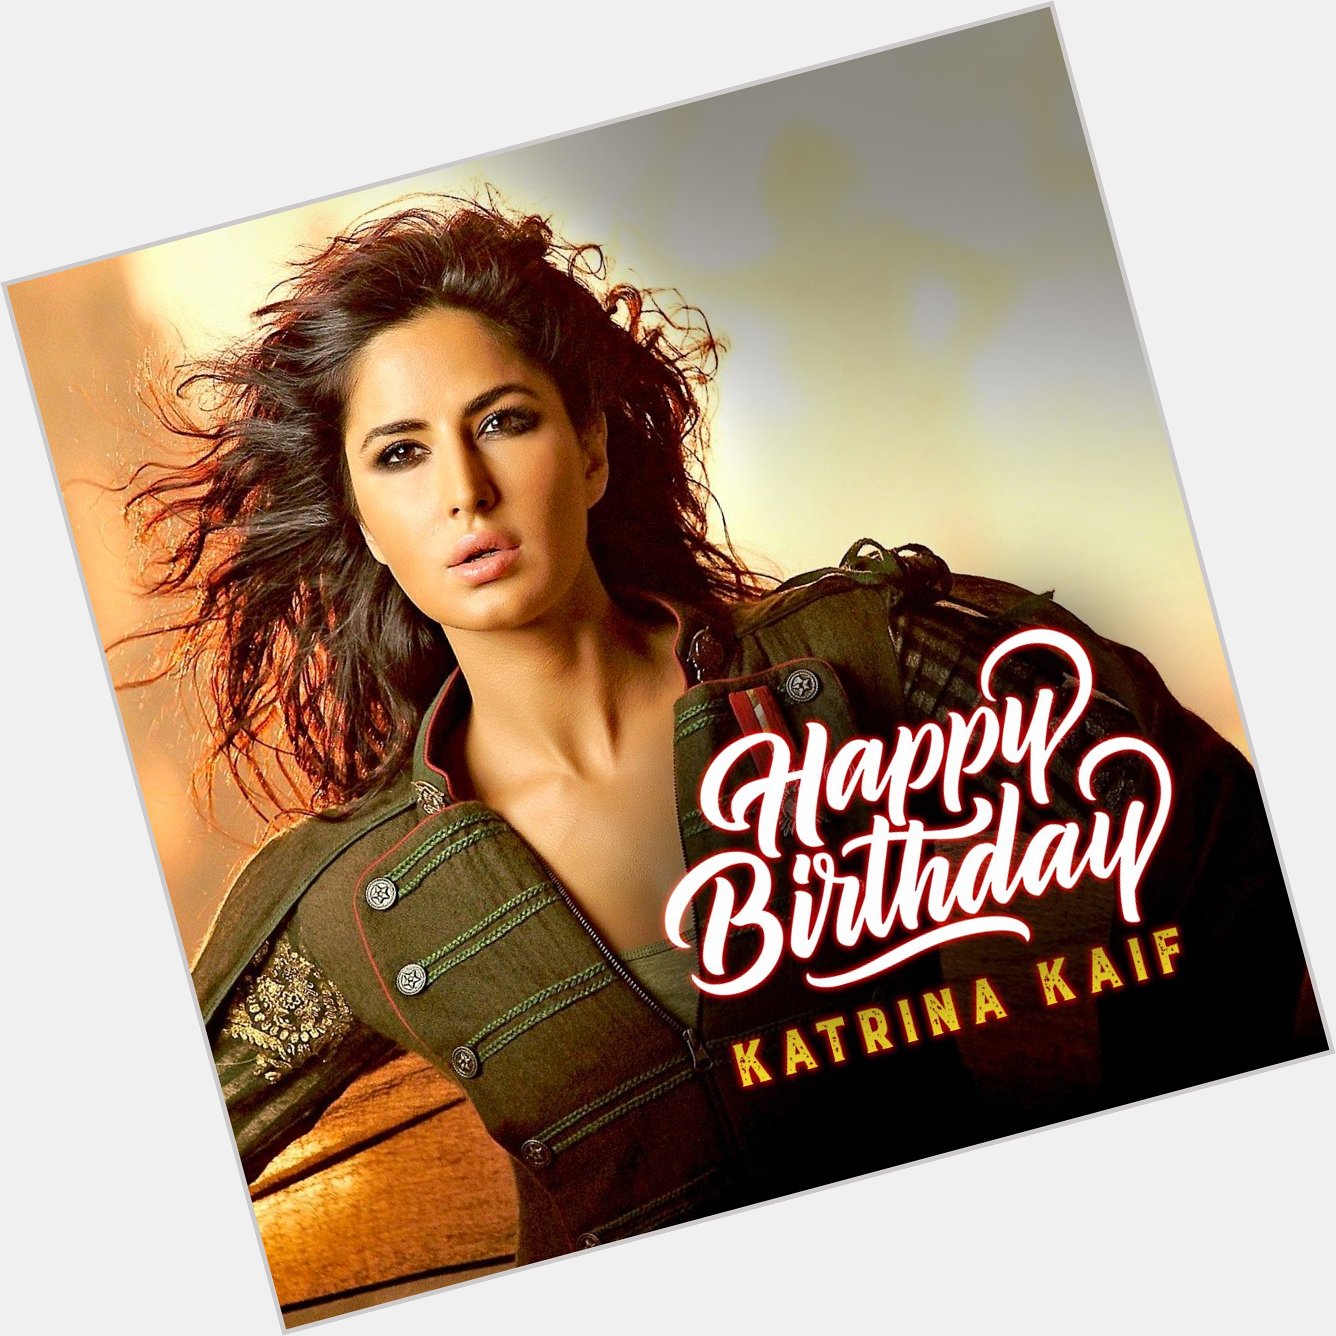 Happy Birthday Katrina Kaif!  